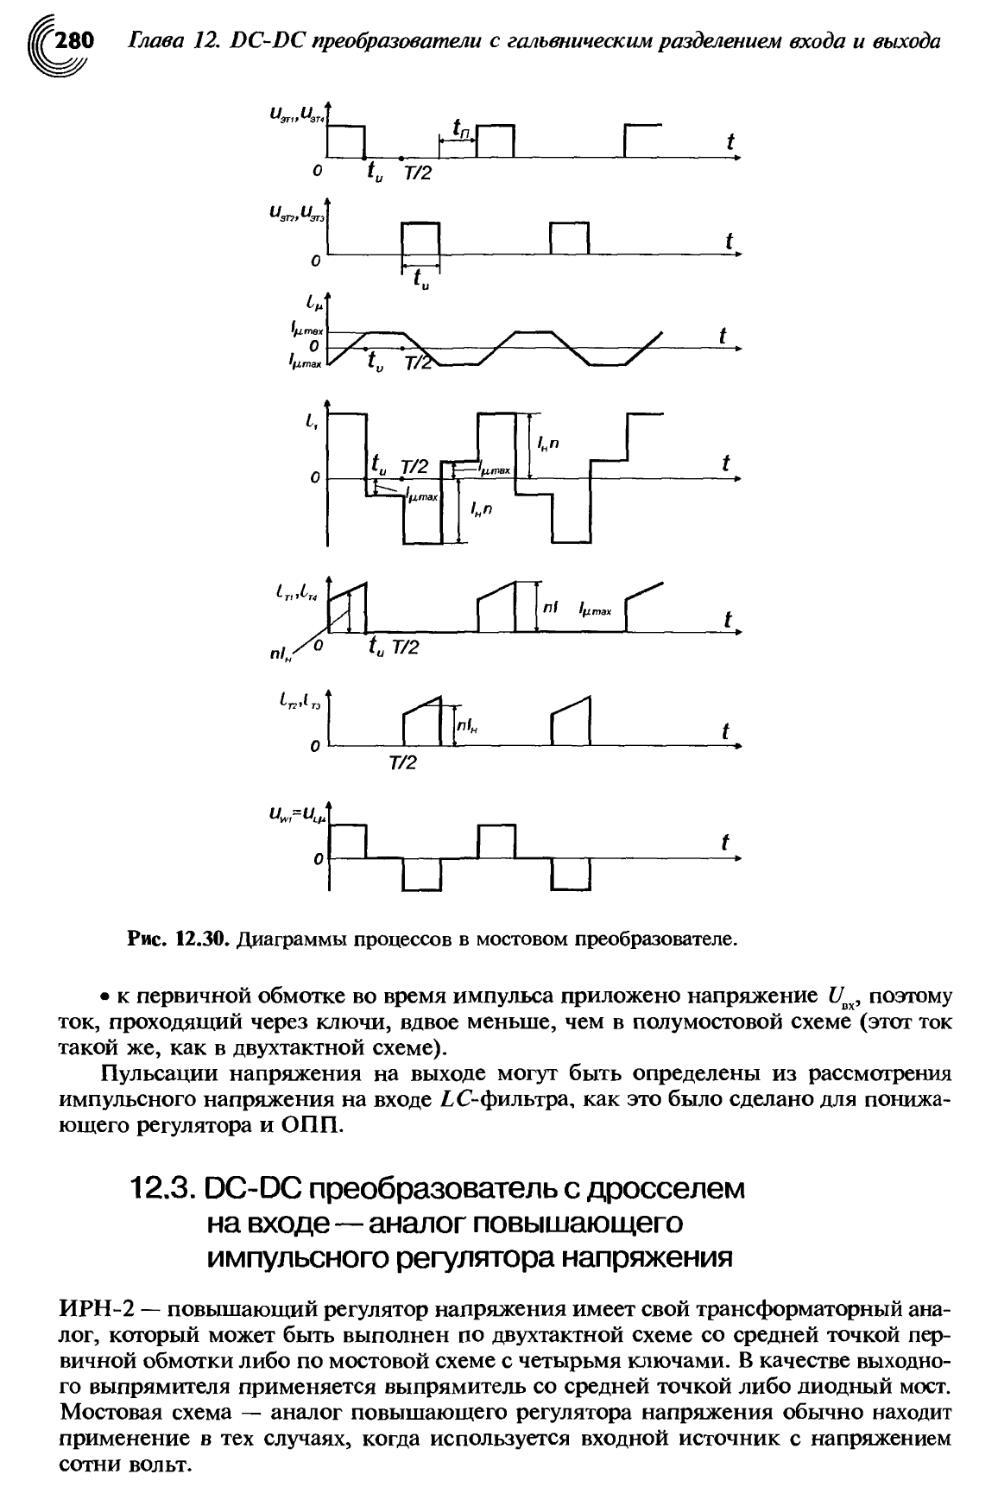 12.3. DC-DC преобразователь с дросселем на входе — аналог повышающего импульсного регулятора напряжения